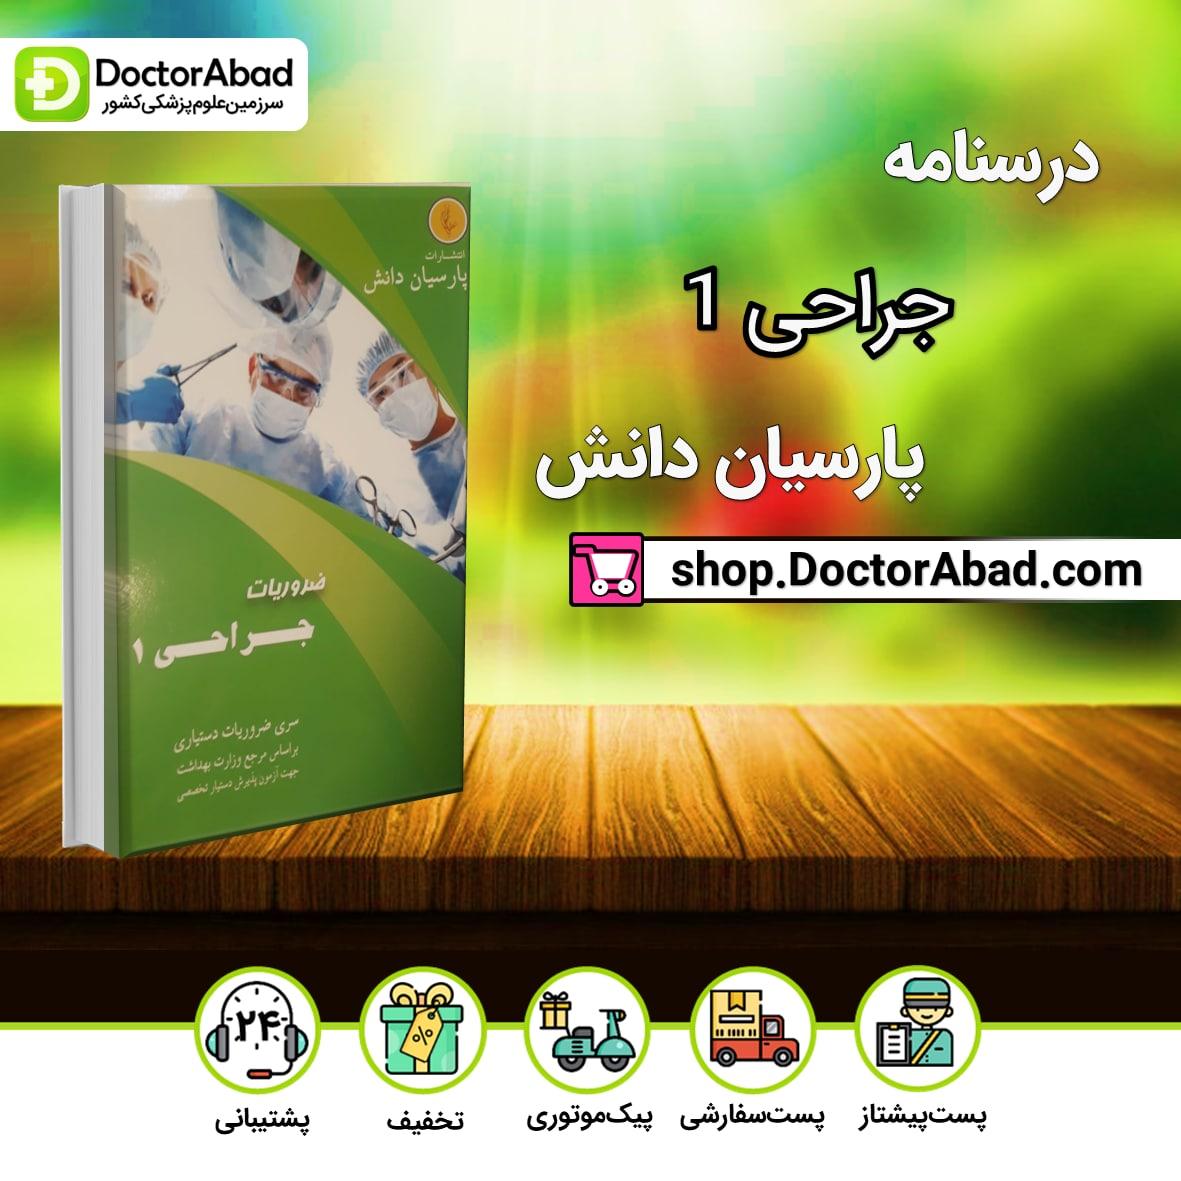 درسنامه جراحی1 Surgery دکتر احمدی آملی (نشر پارسیان دانش)